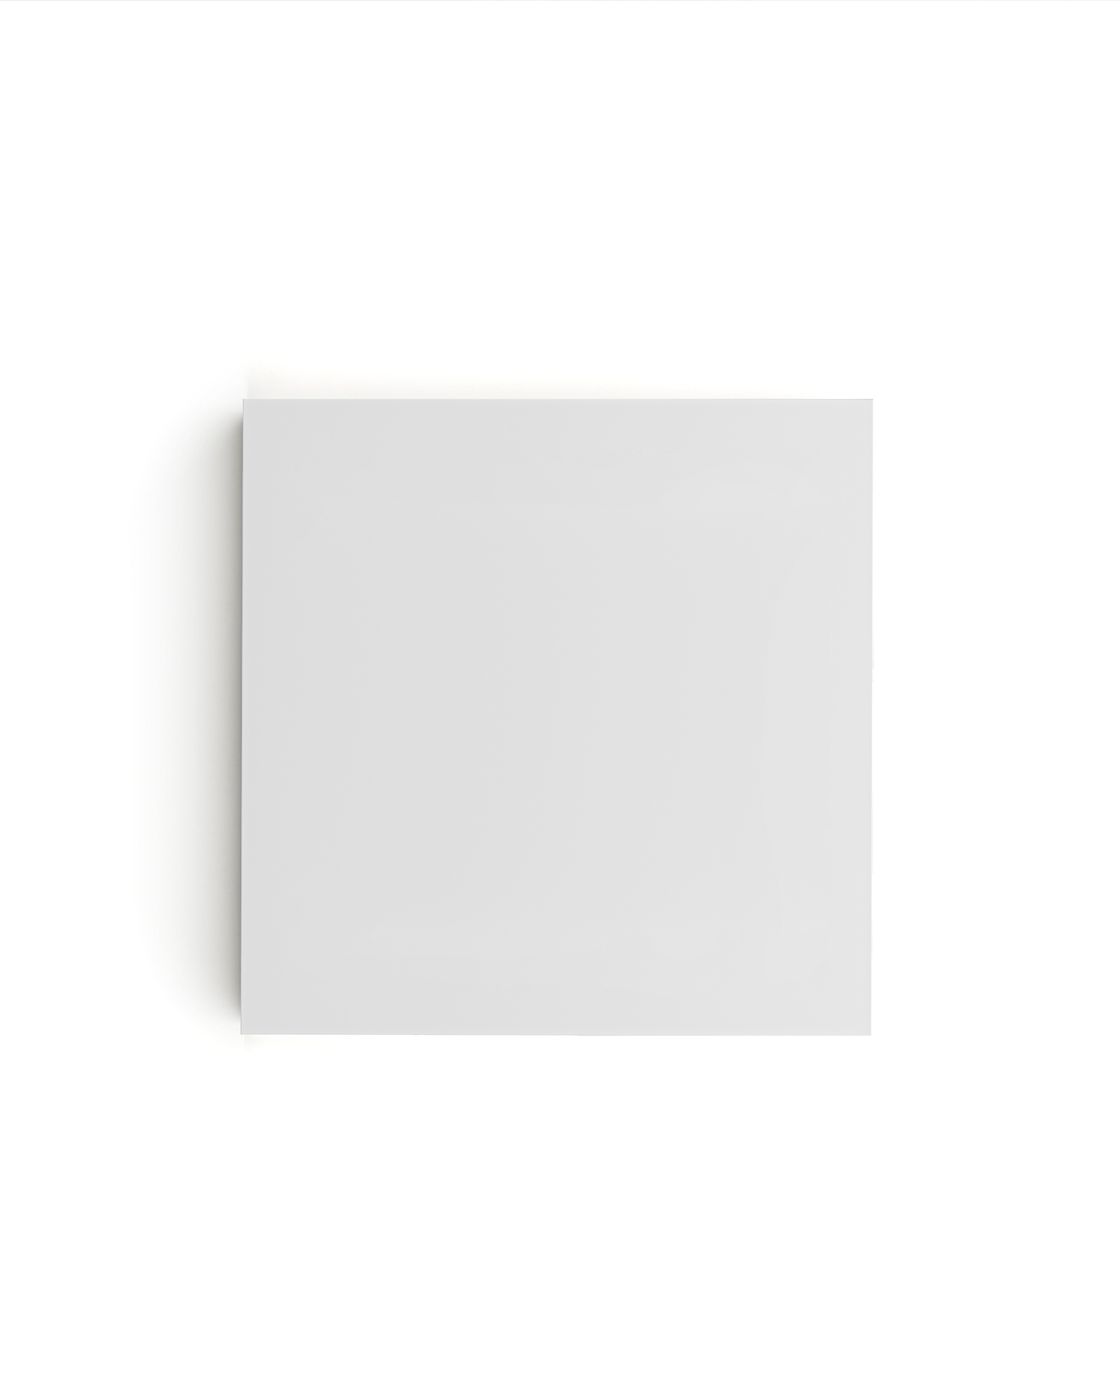 Matte White Sample Board